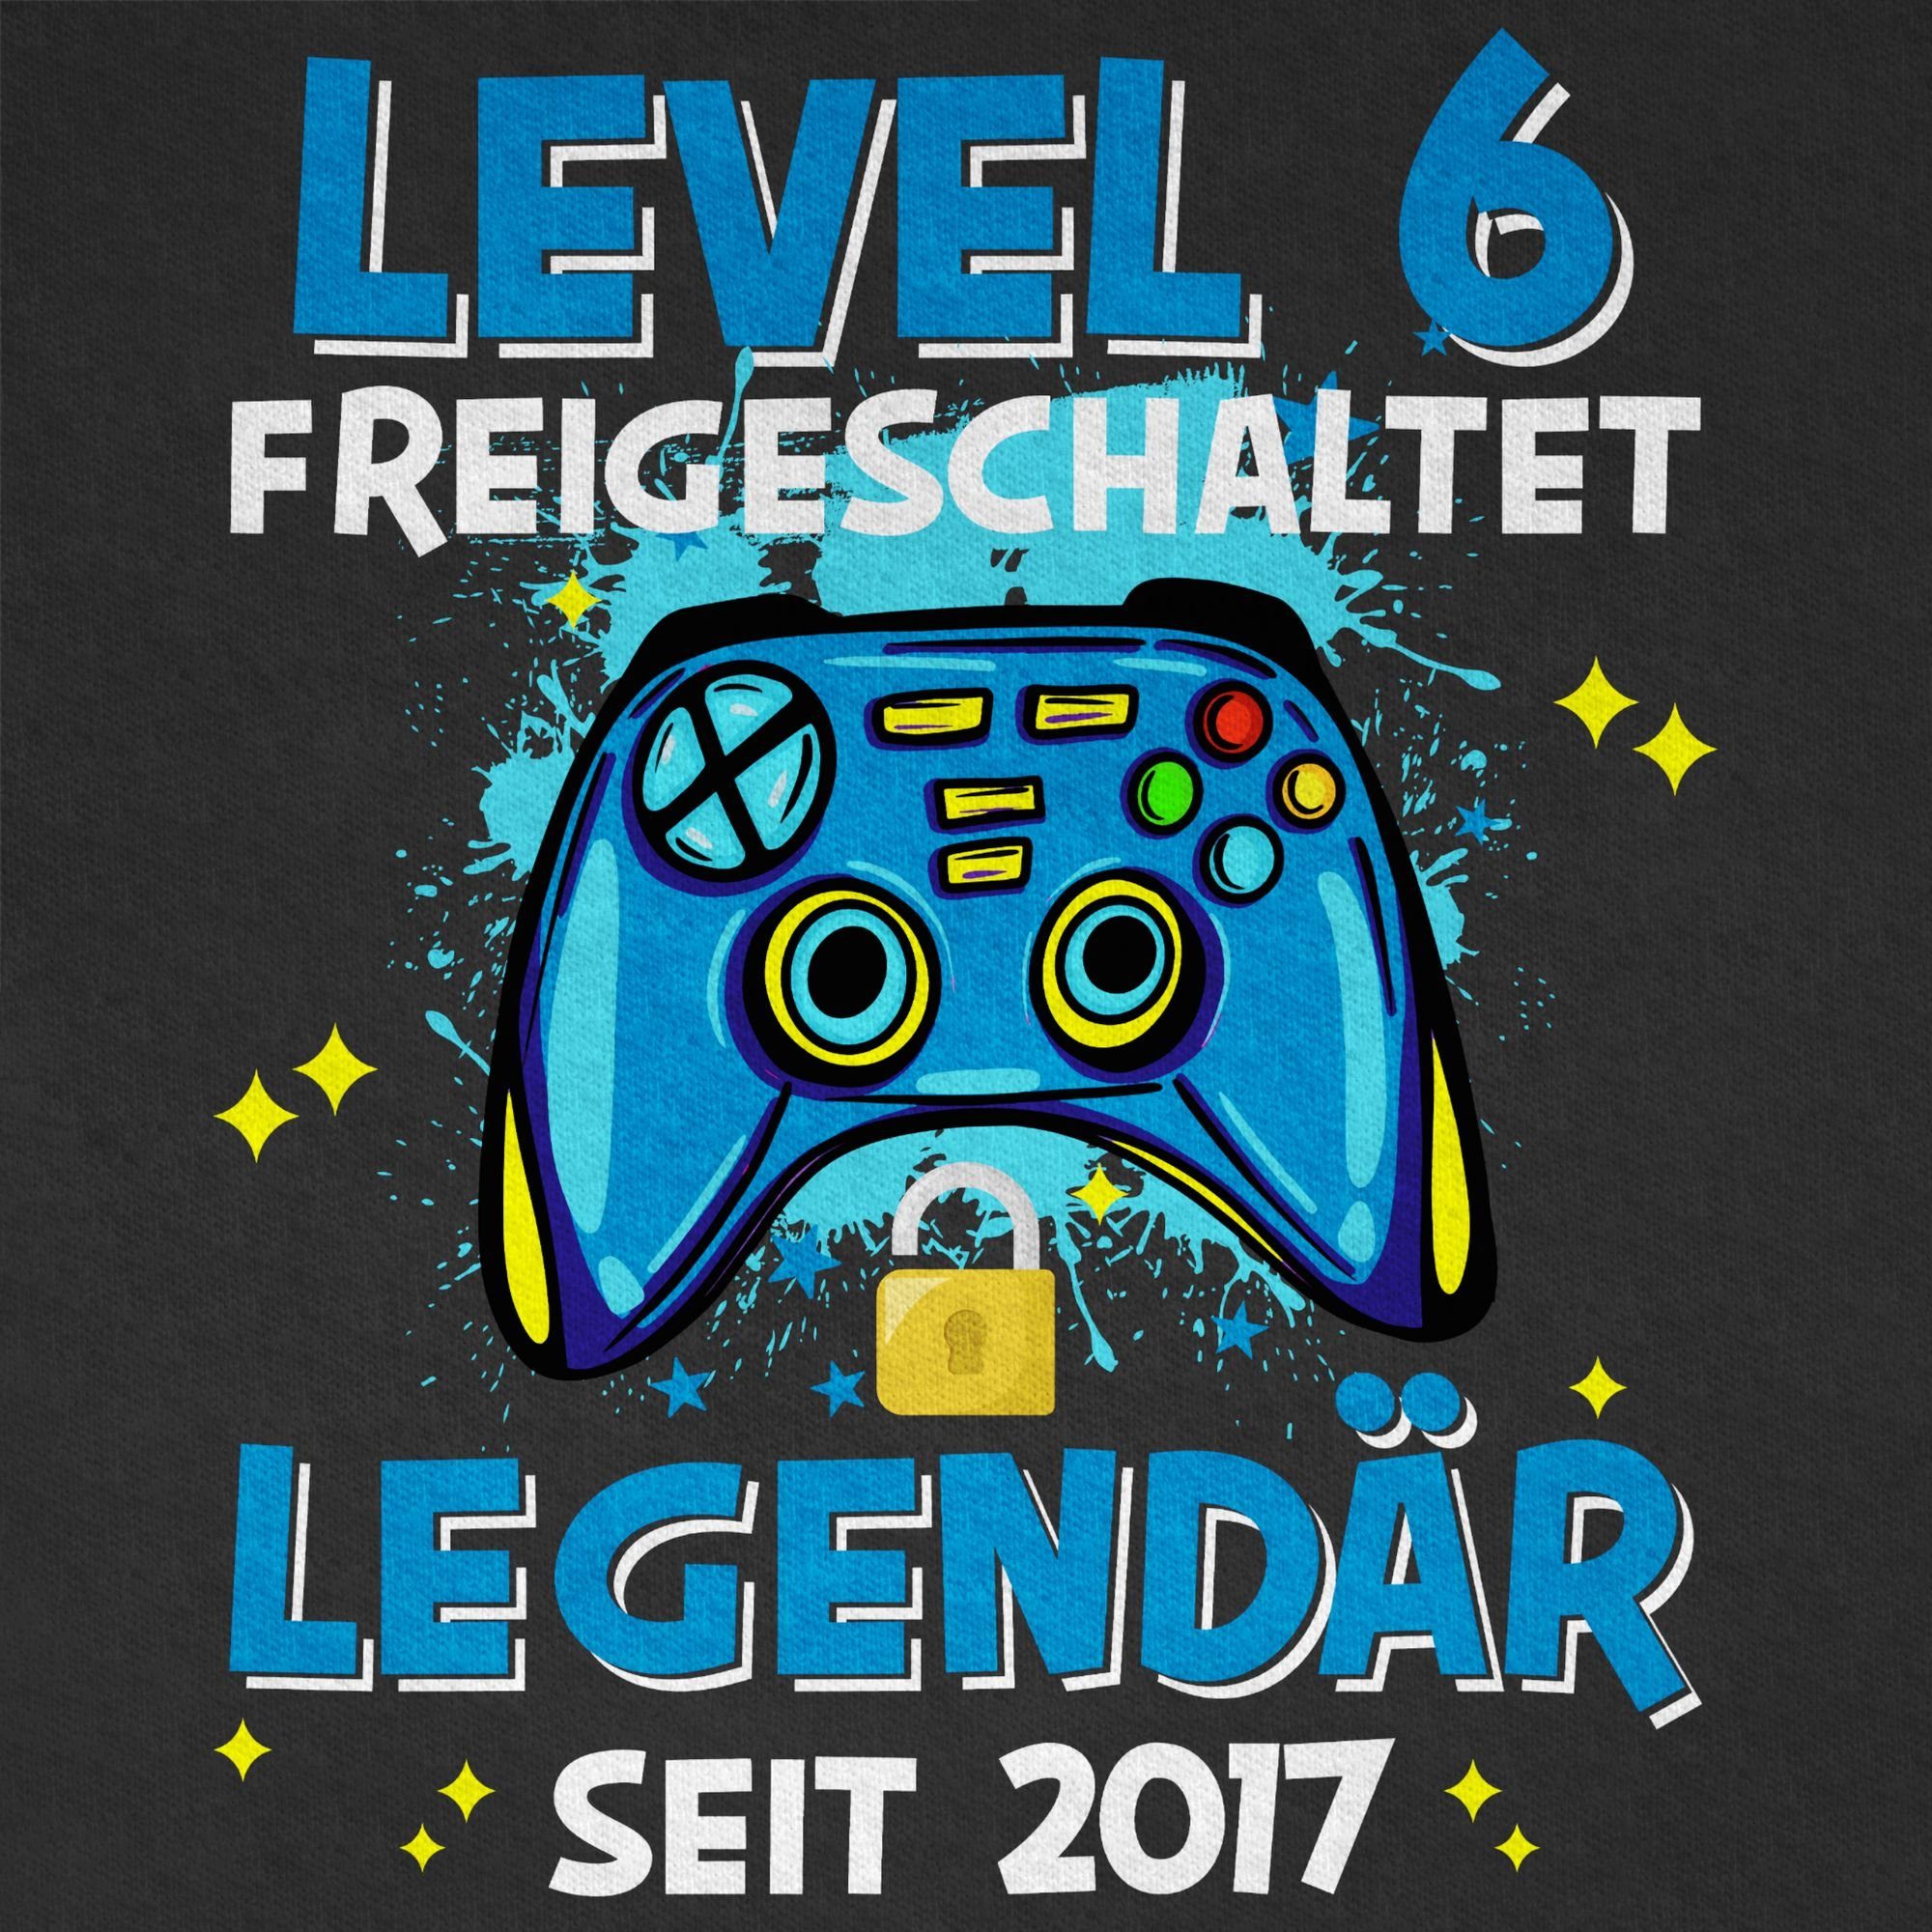 2017 Schwarz Geburtstag freigeschaltet Shirtracer seit Level Legendär 02 6 6. T-Shirt